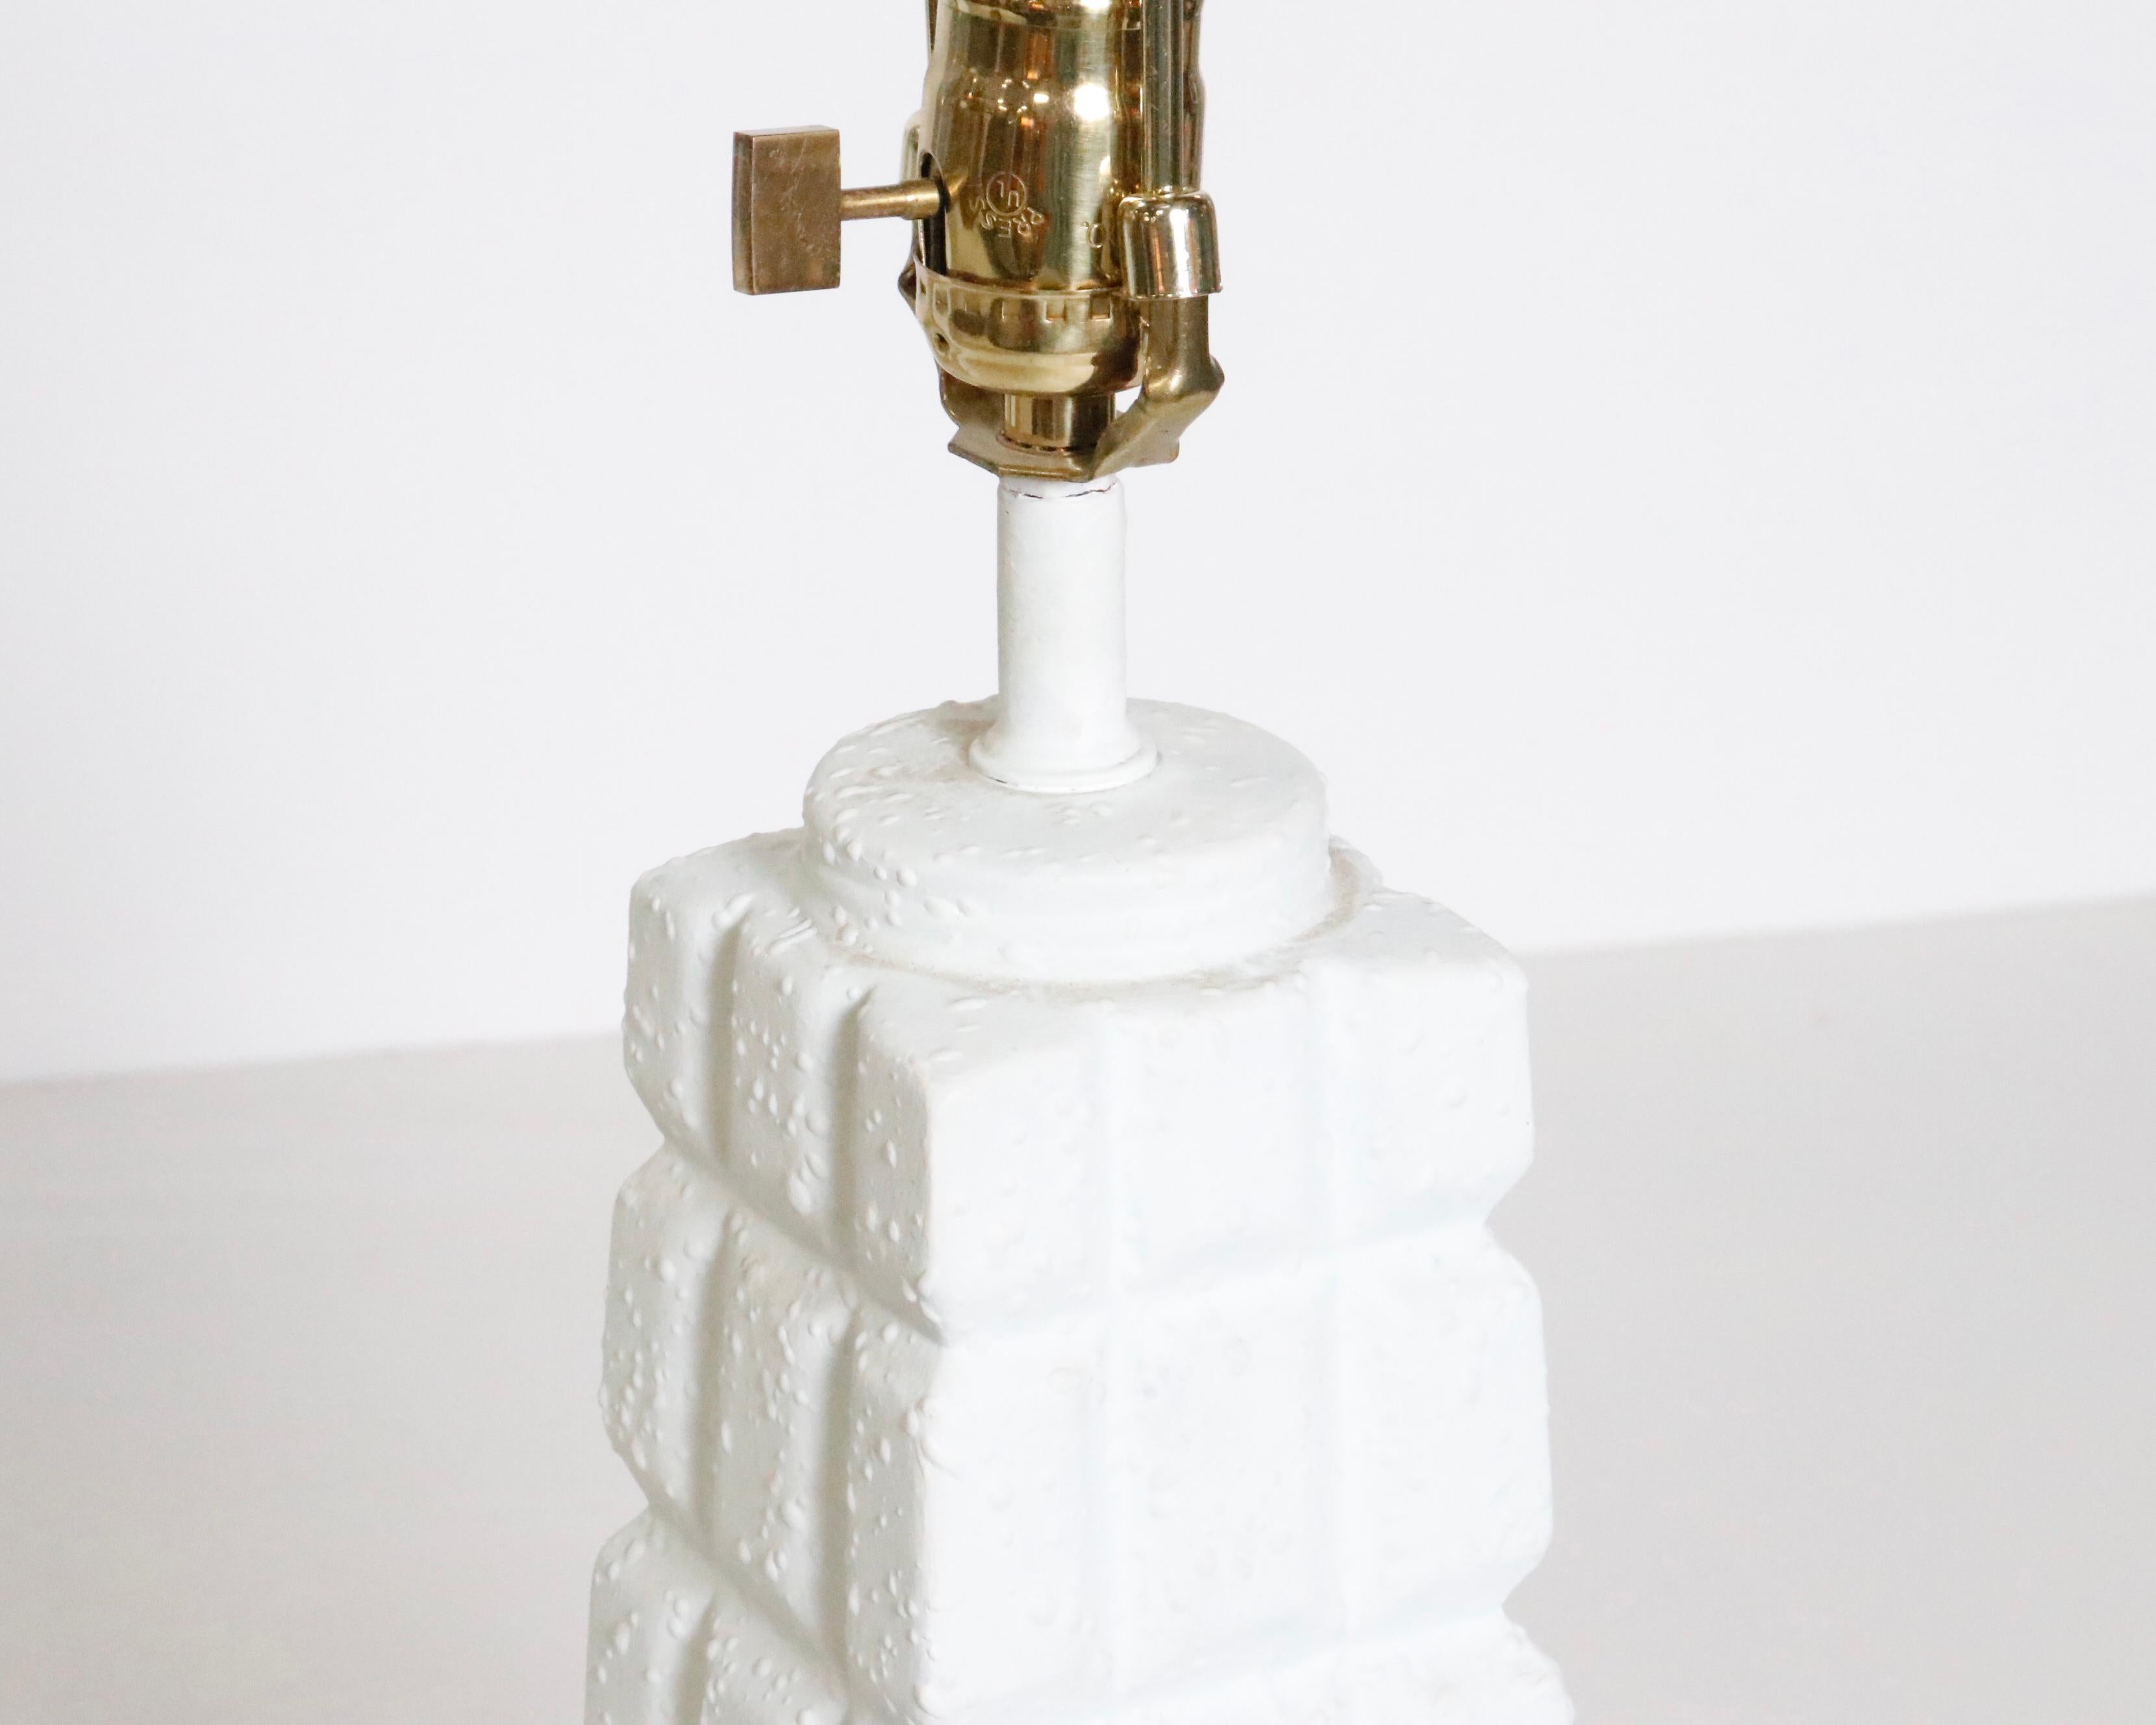 Une paire de lampes de table blanches faites de gesso sur une forme en céramique.  USA, vers 1970.

Recâblé avec de nouvelles prises, des ferrures en laiton et un cordon torsadé en soie noire française.

Dimensions : 17 pouces H à la base de la